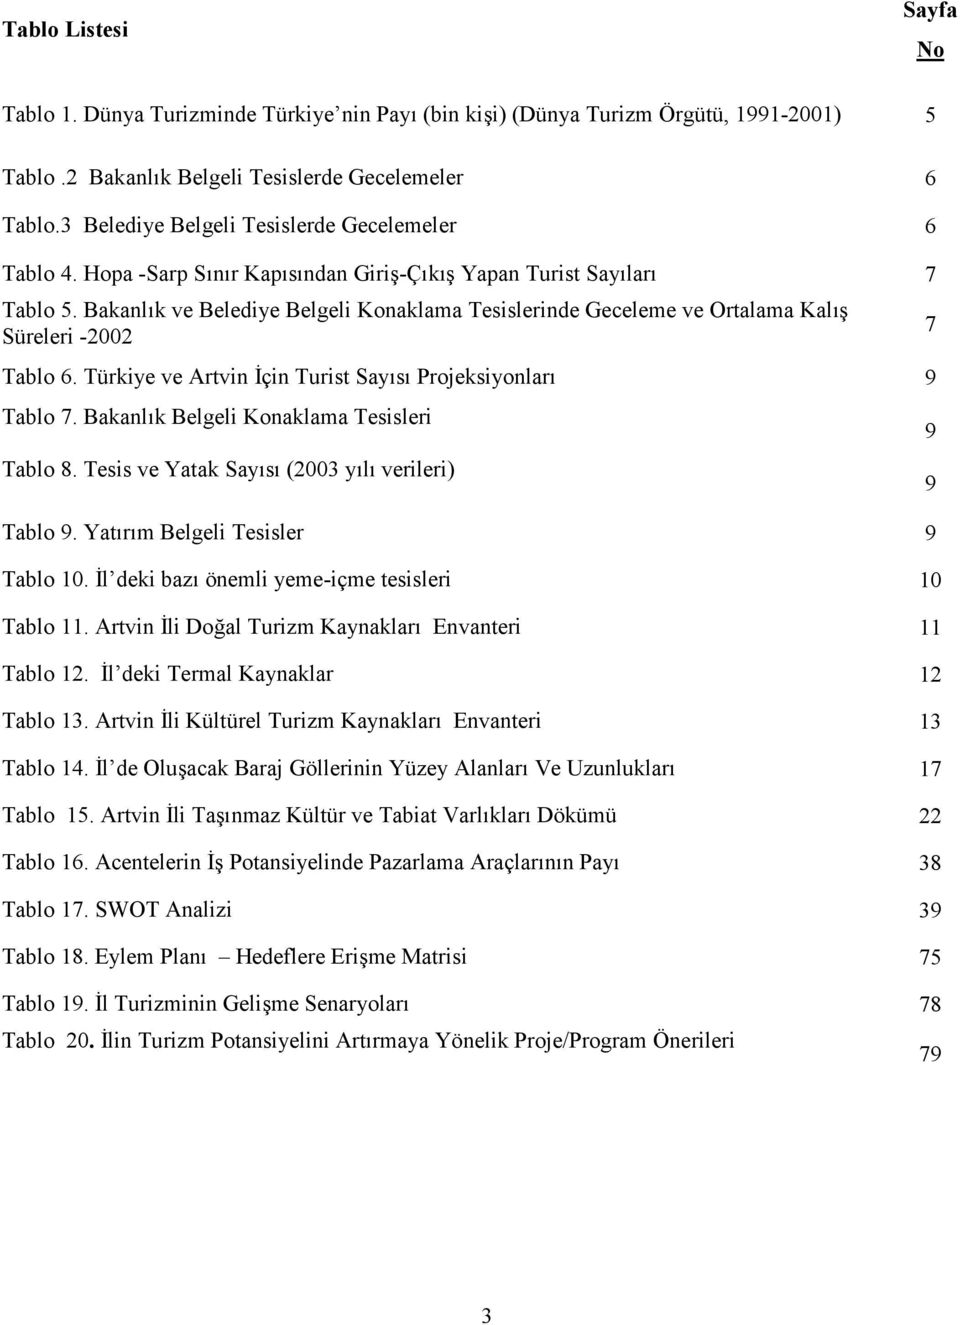 Bakanlk ve Belediye Belgeli Konaklama Tesislerinde Geceleme ve Ortalama Kal9 Süreleri -2002 7 Tablo 6. Türkiye ve Artvin *çin Turist Says Projeksiyonlar 9 Tablo 7.